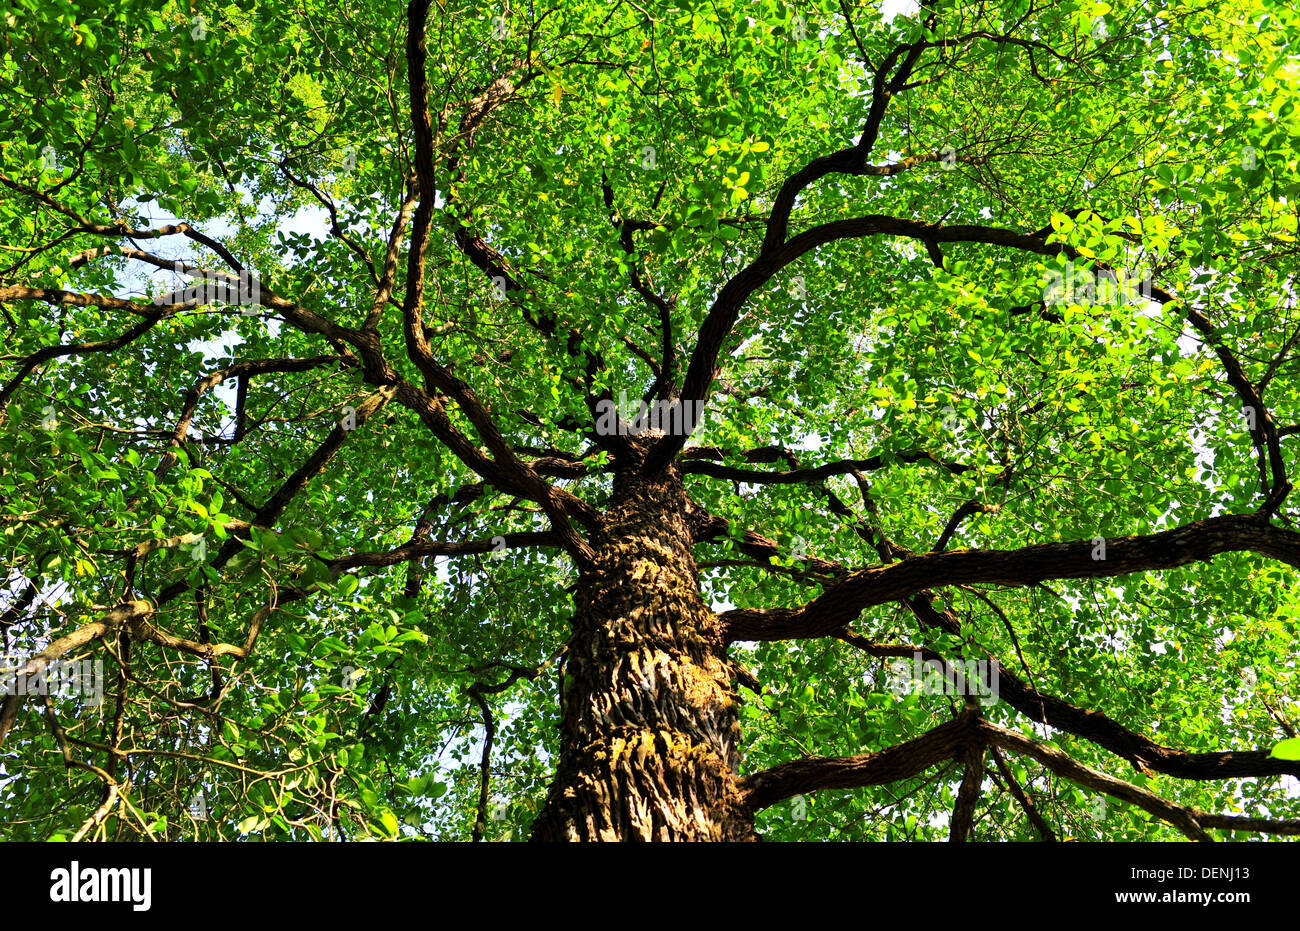 The Tembusu Tree (Singapore Botanic Gardens) Stock Photo